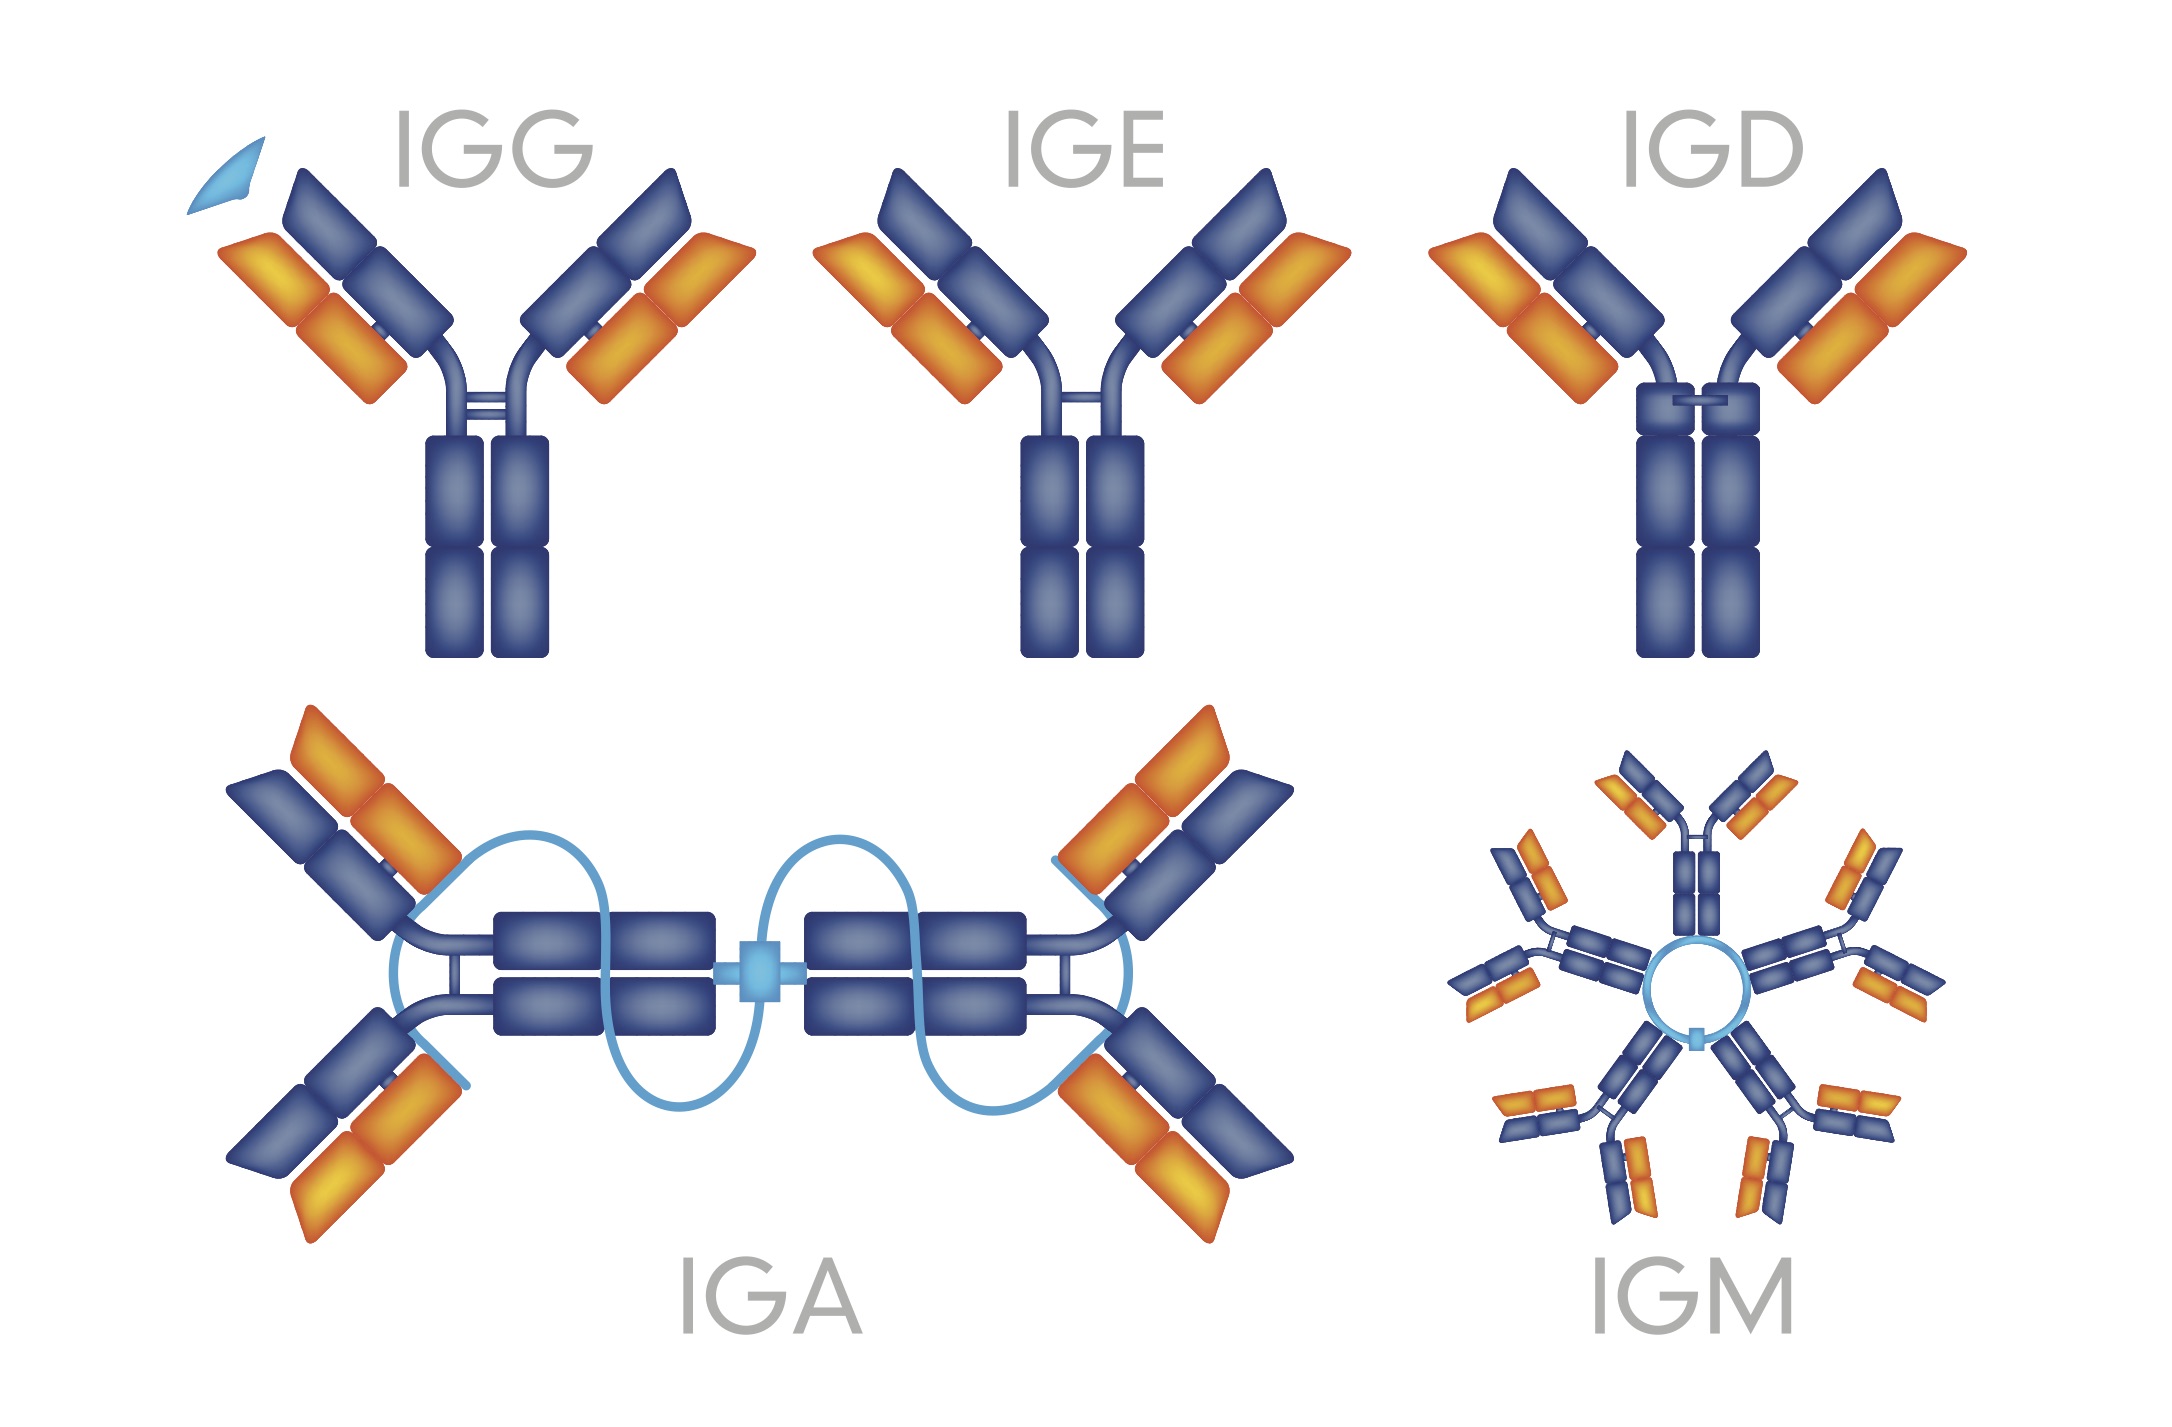 immunoglobulin G, A, M, and E